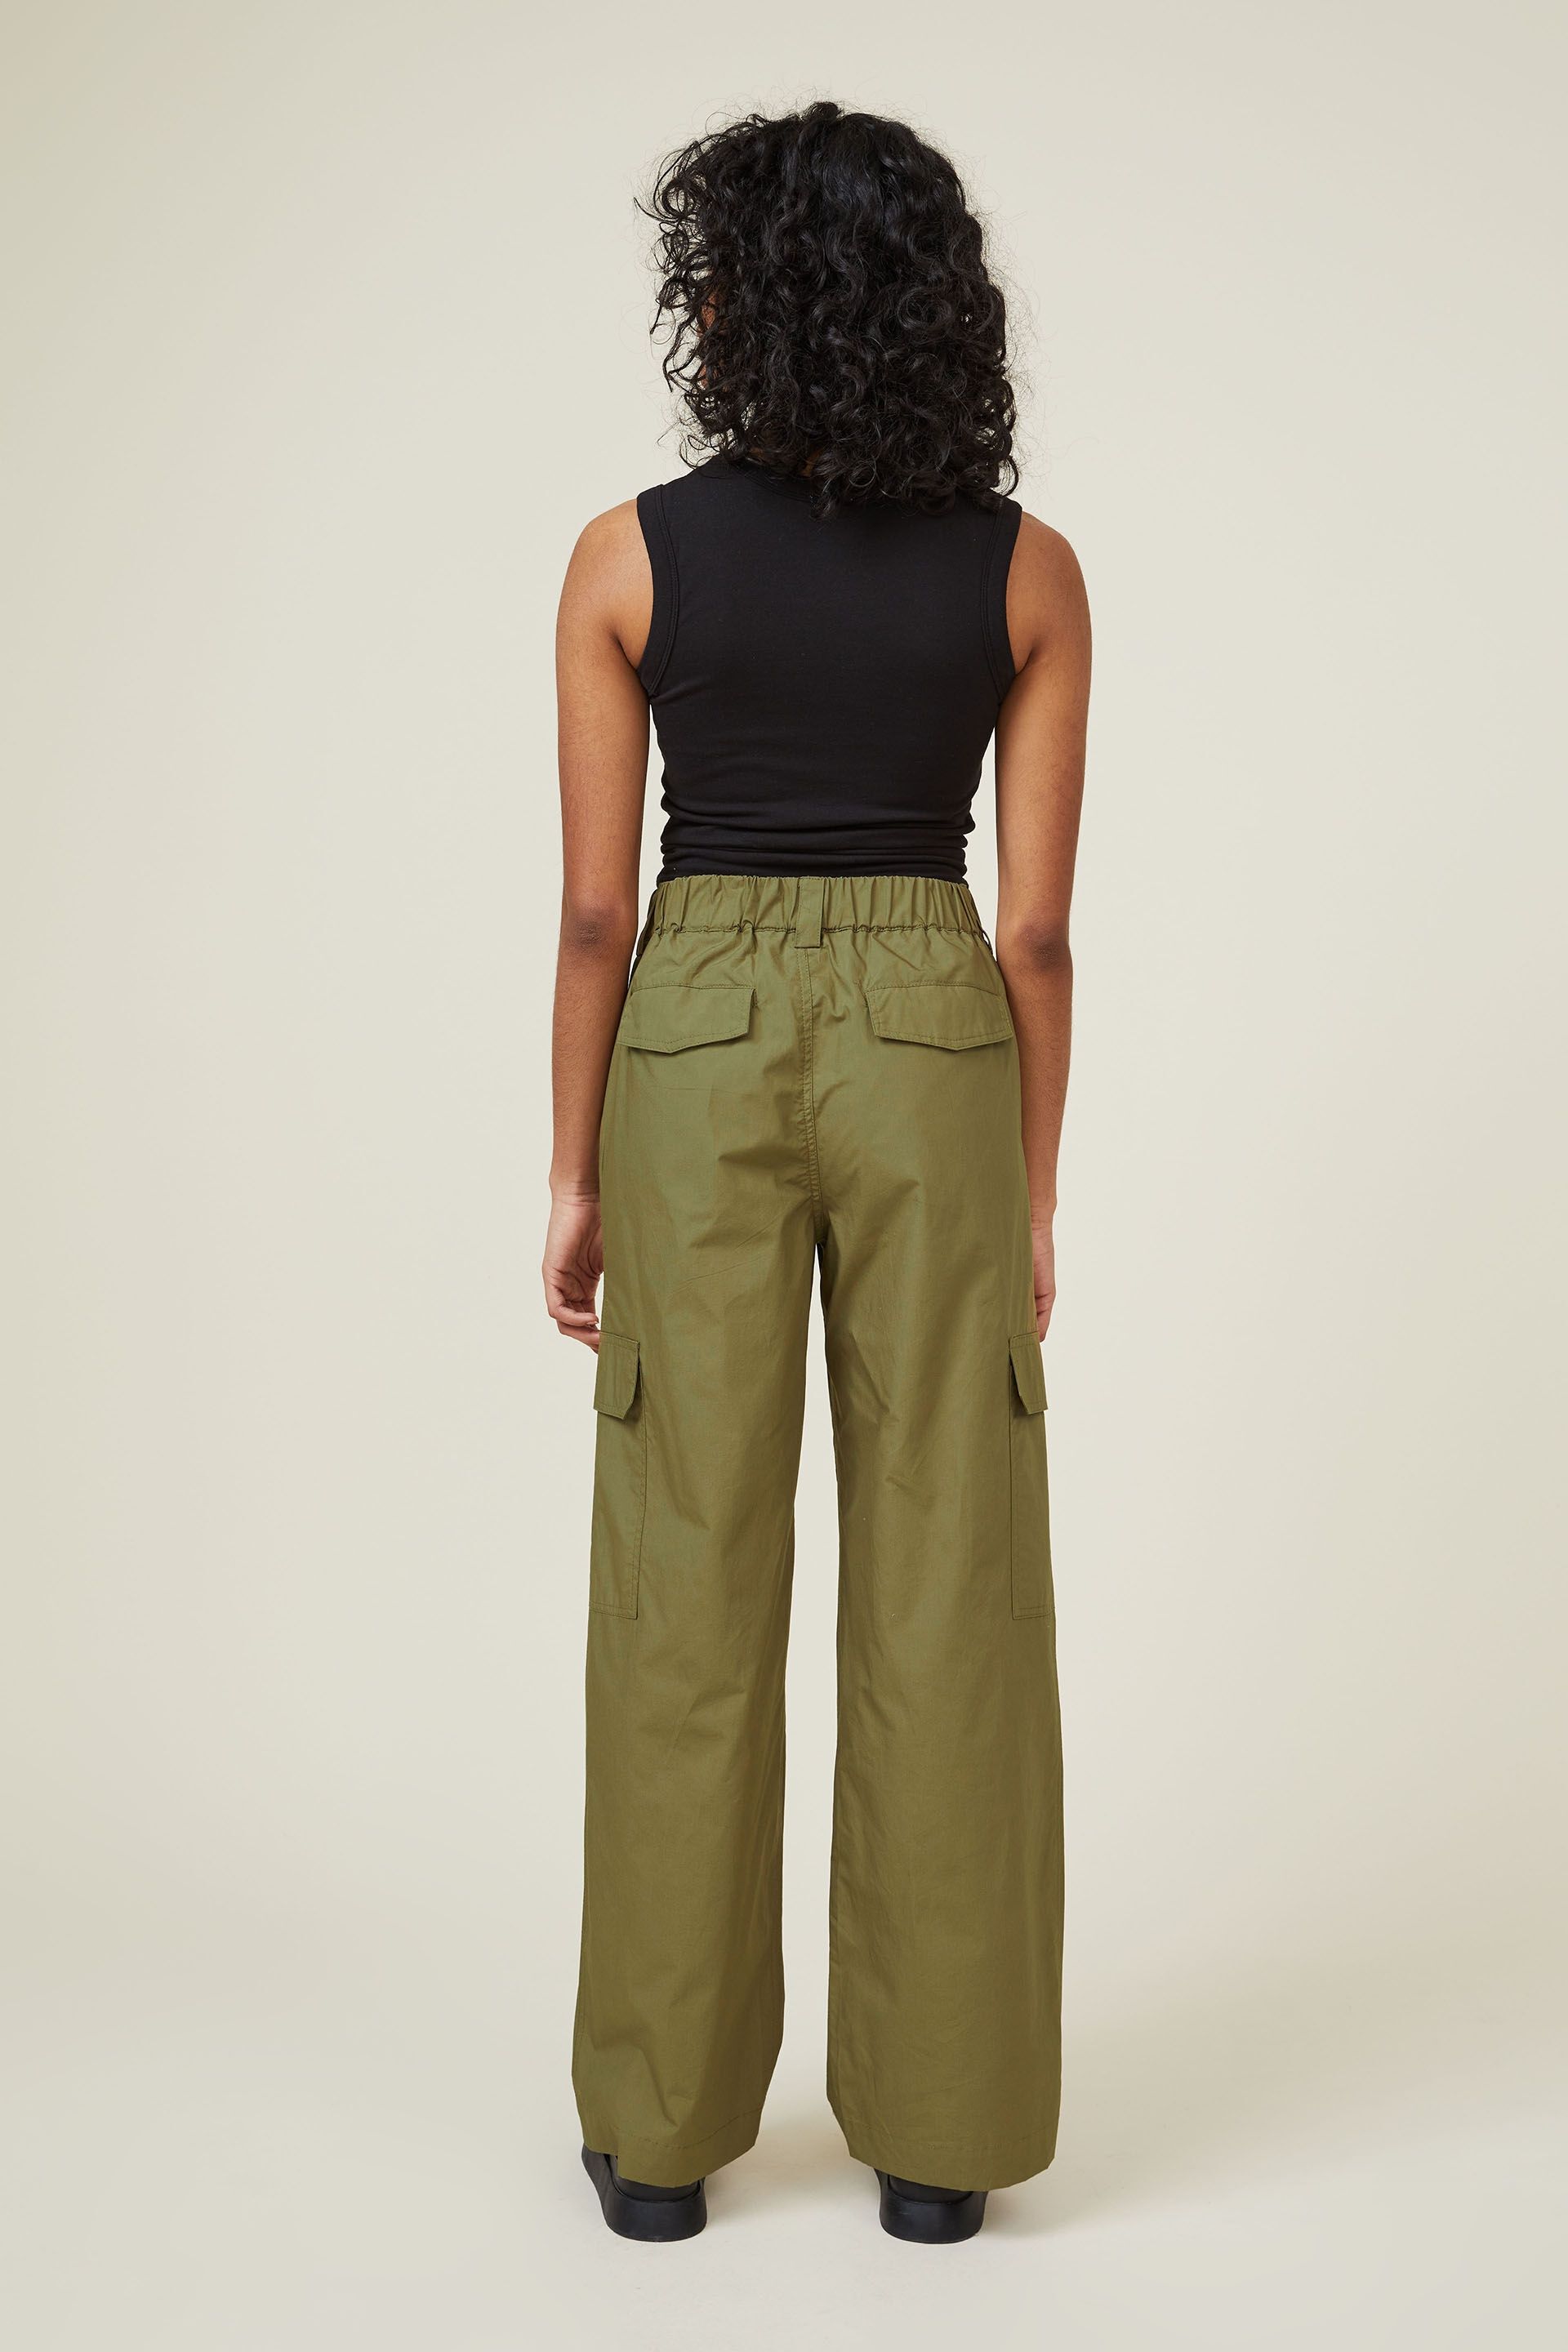 Green Bershka Cargo trousers WOMEN FASHION Trousers Cargo trousers Print discount 83% 